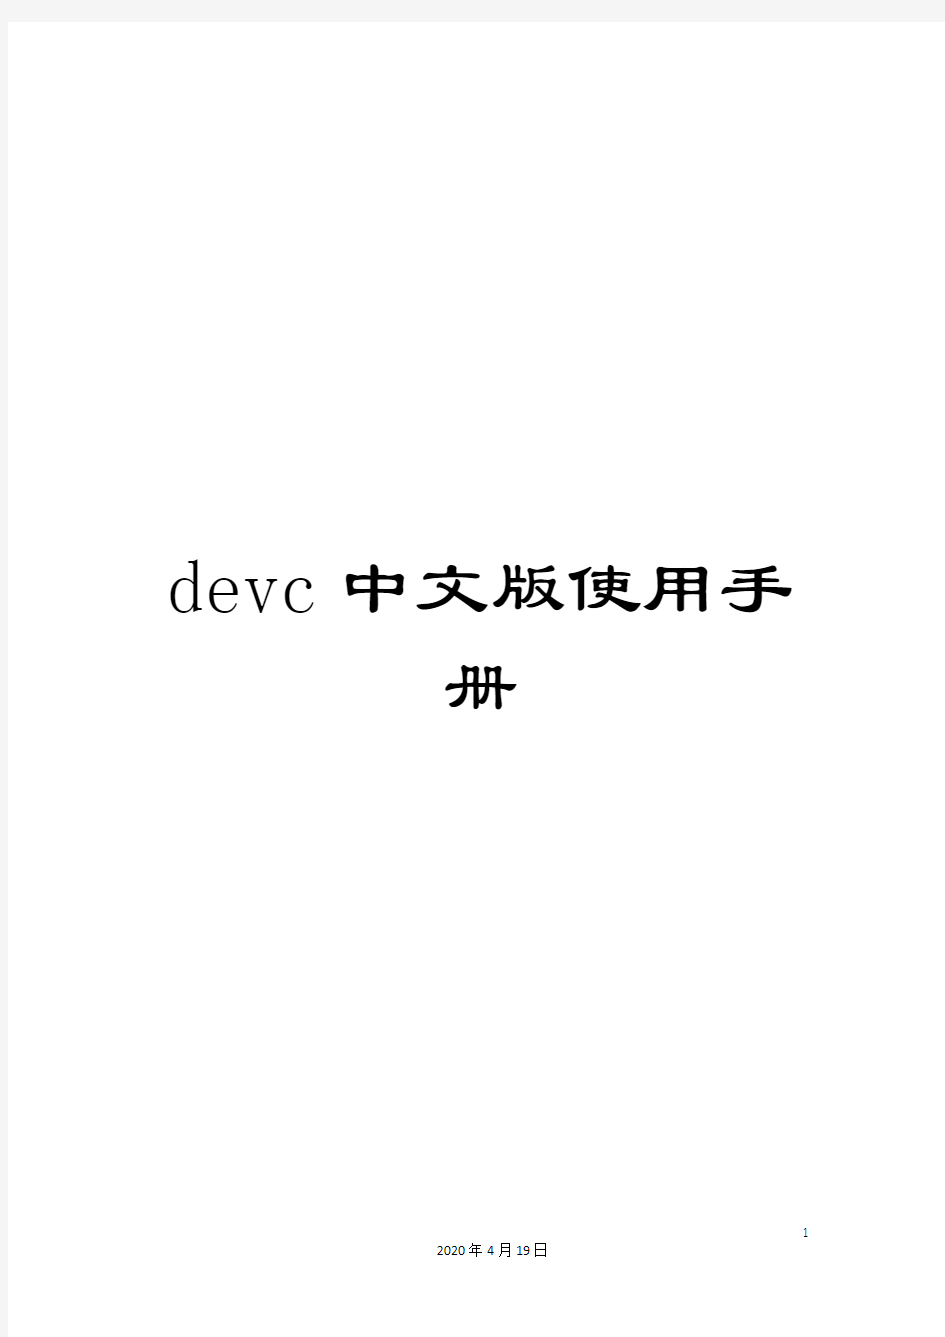 devc中文版使用手册